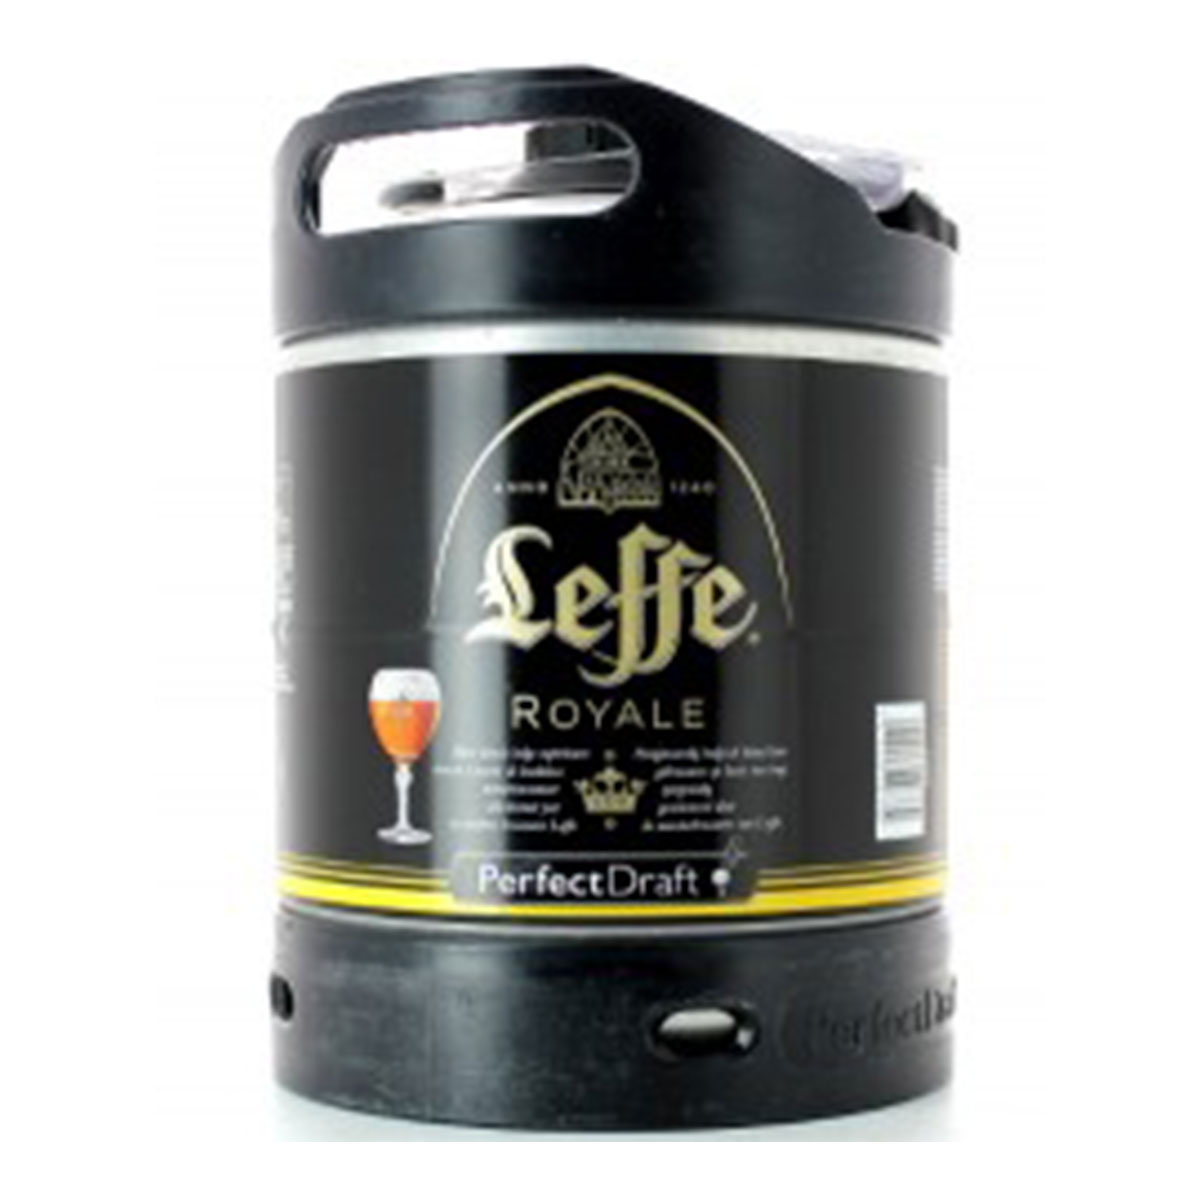 Fût de Bière Leffe Royale - Achat / Vente de bière en fût Perfect